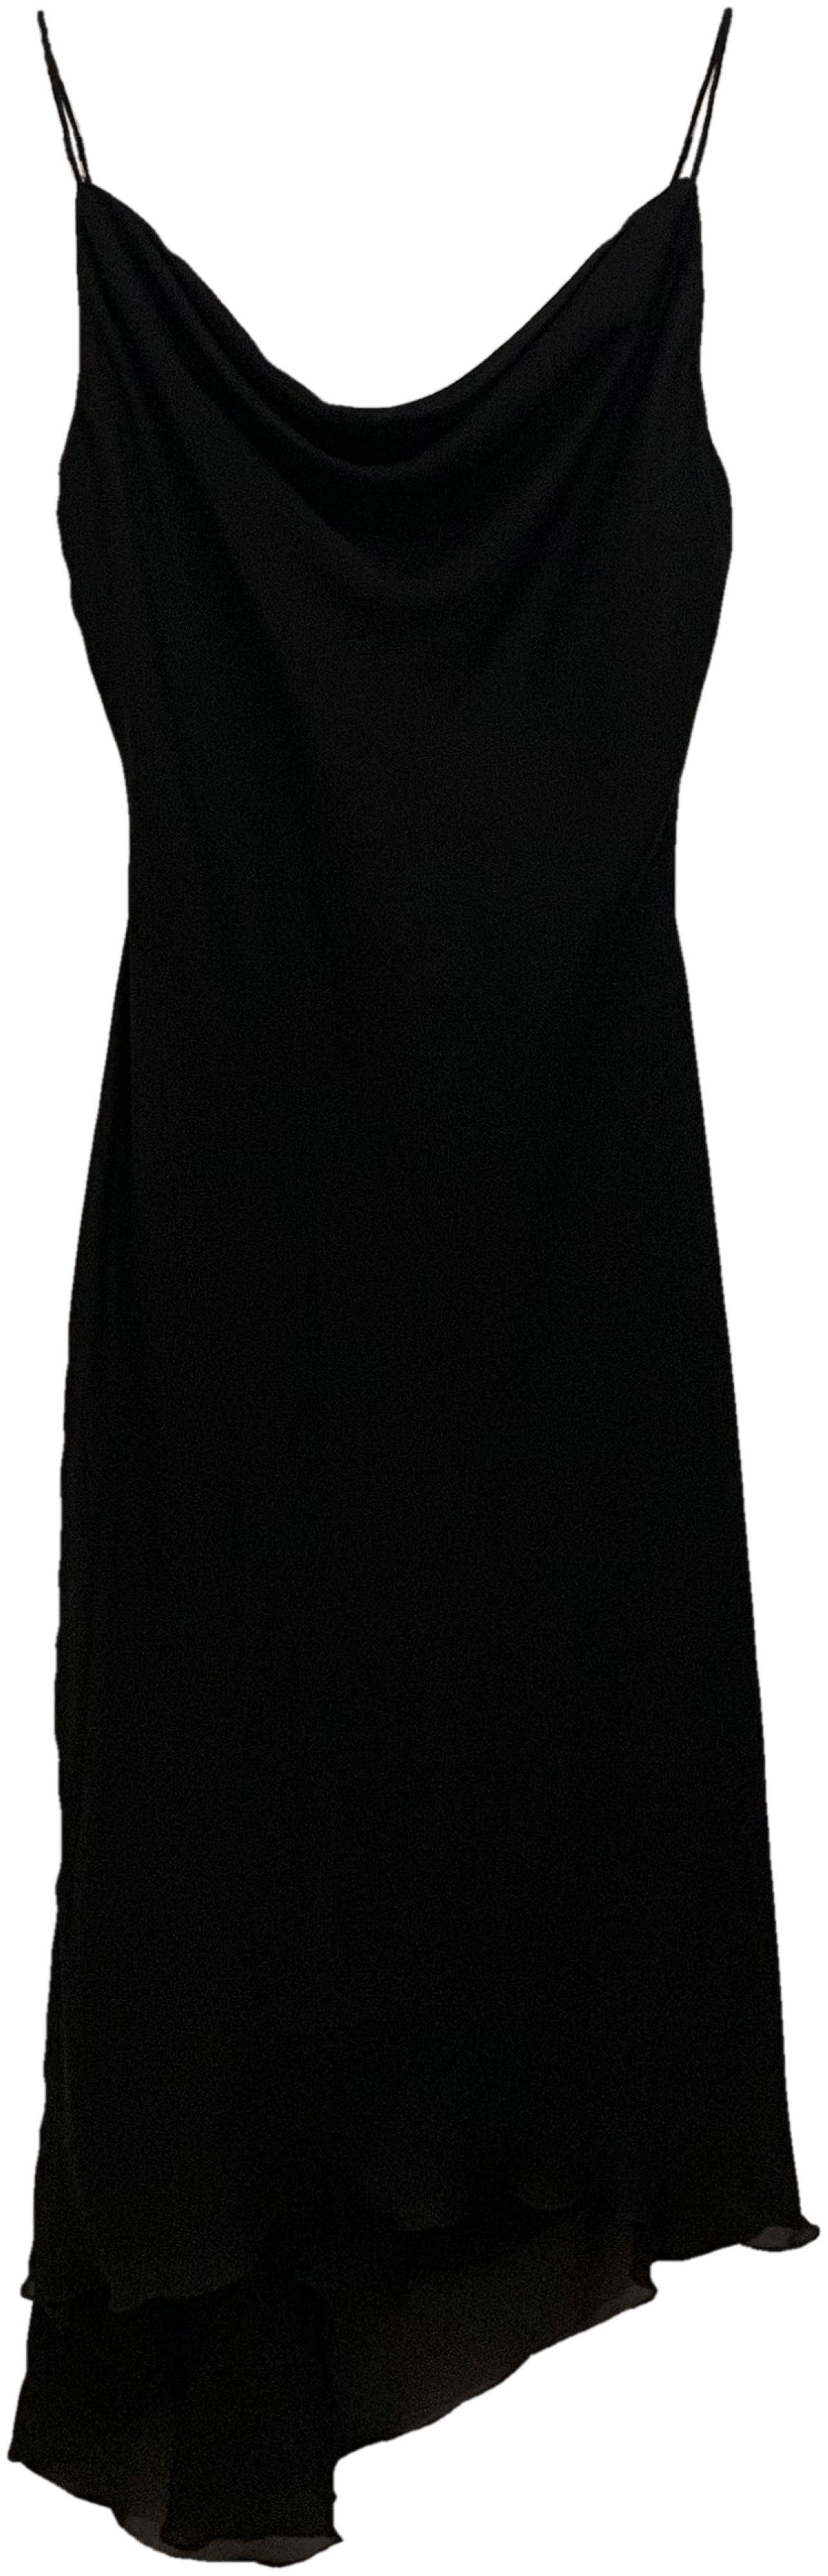 Vintage Black Asymmetrical Cowl Neck Spaghetti Strap Little Black Dress ...